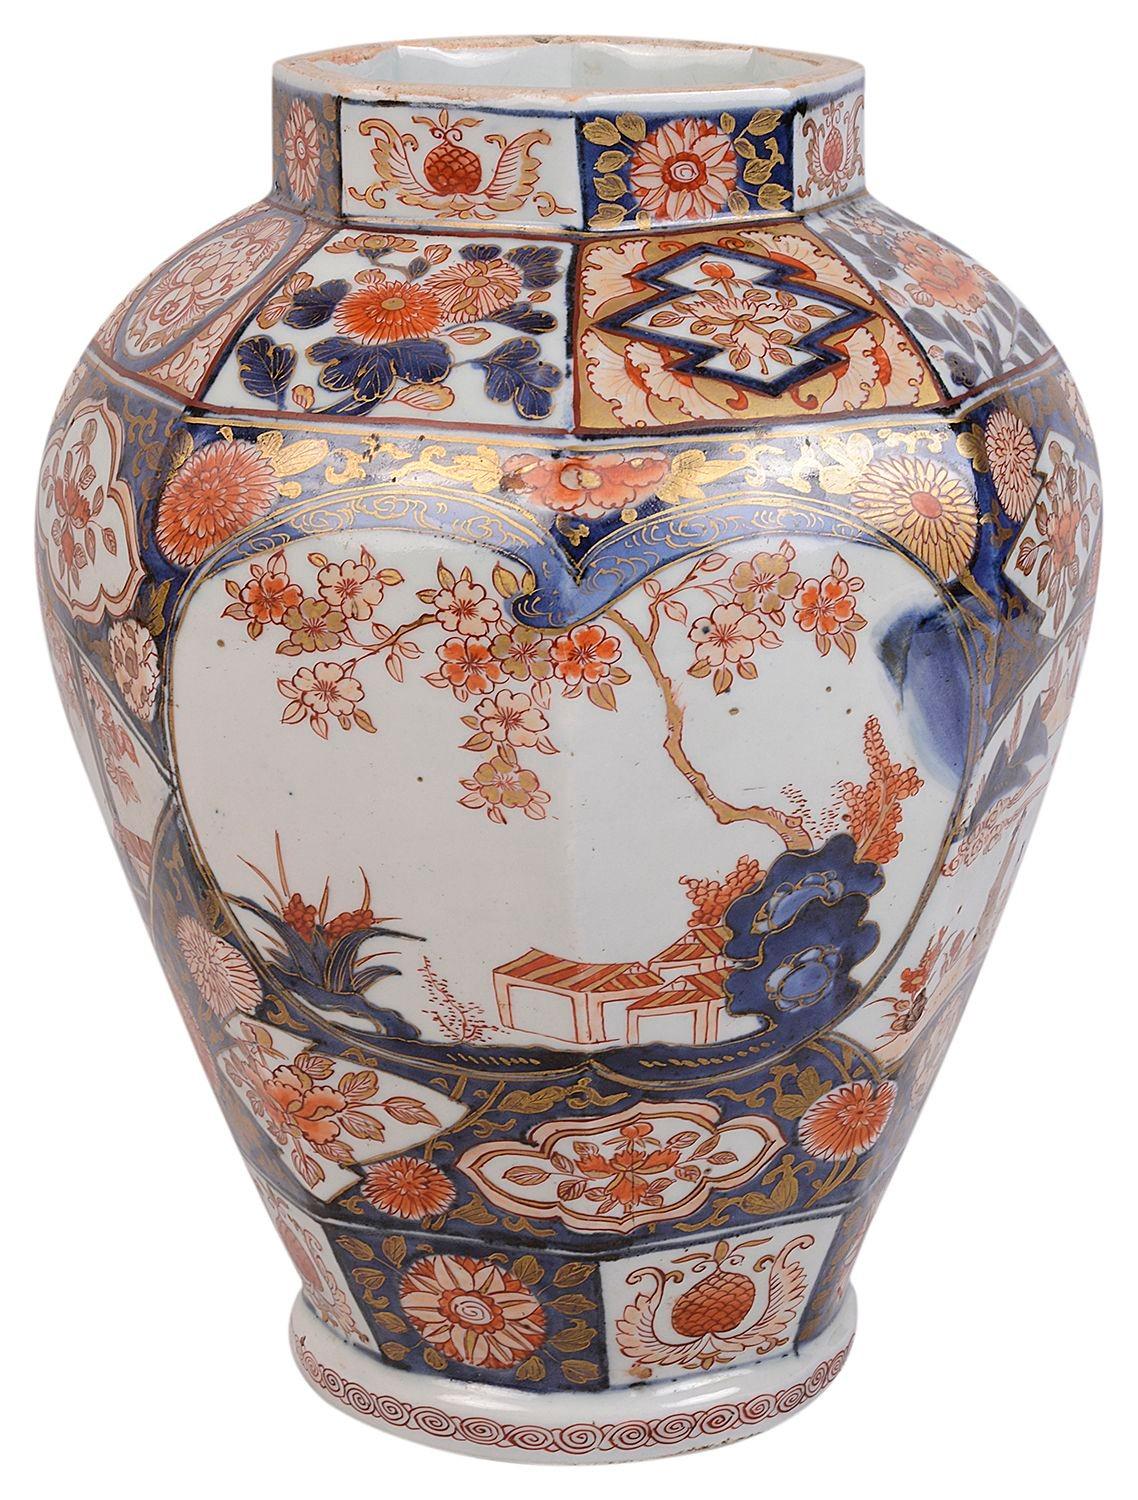 Eine gute Qualität 18. Jahrhundert japanischen Arita Imari Porzellan Vase / Lampe. Die Randverzierungen mit klassischen Motiven sind in kräftigen Farben gehalten, und auf den Tafeln sind blühende Bäume und Menschen in einer bergigen Umgebung